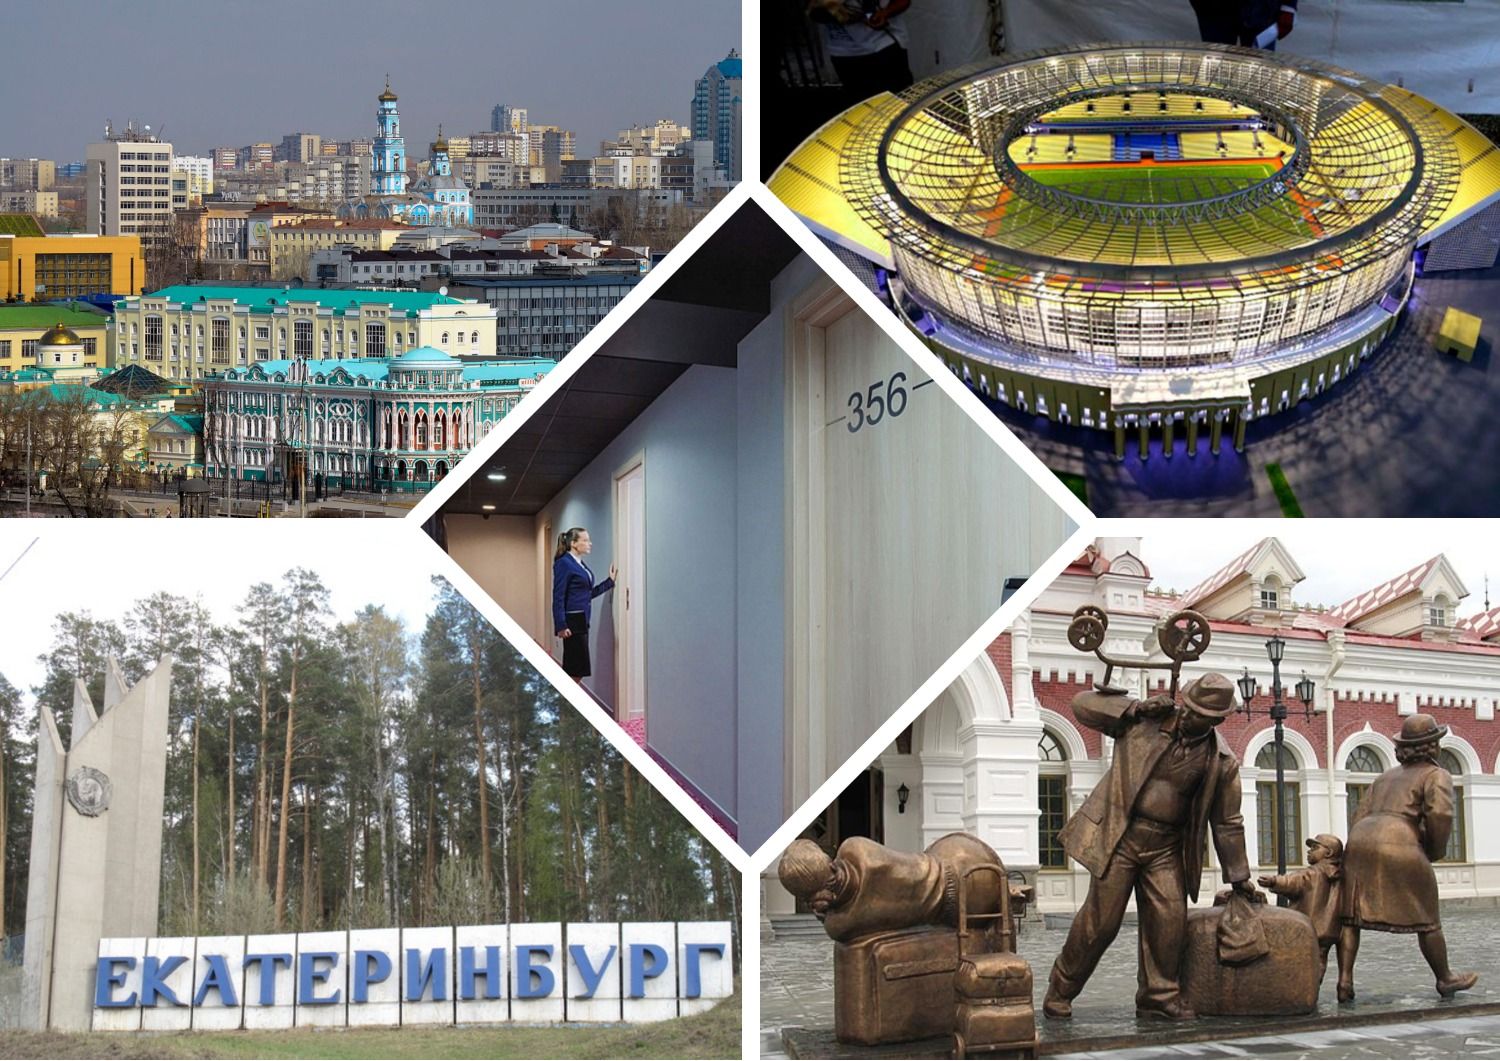 Najbolji jeftini hoteli, hoteli, hosteli u Jekaterinburgu u 2020